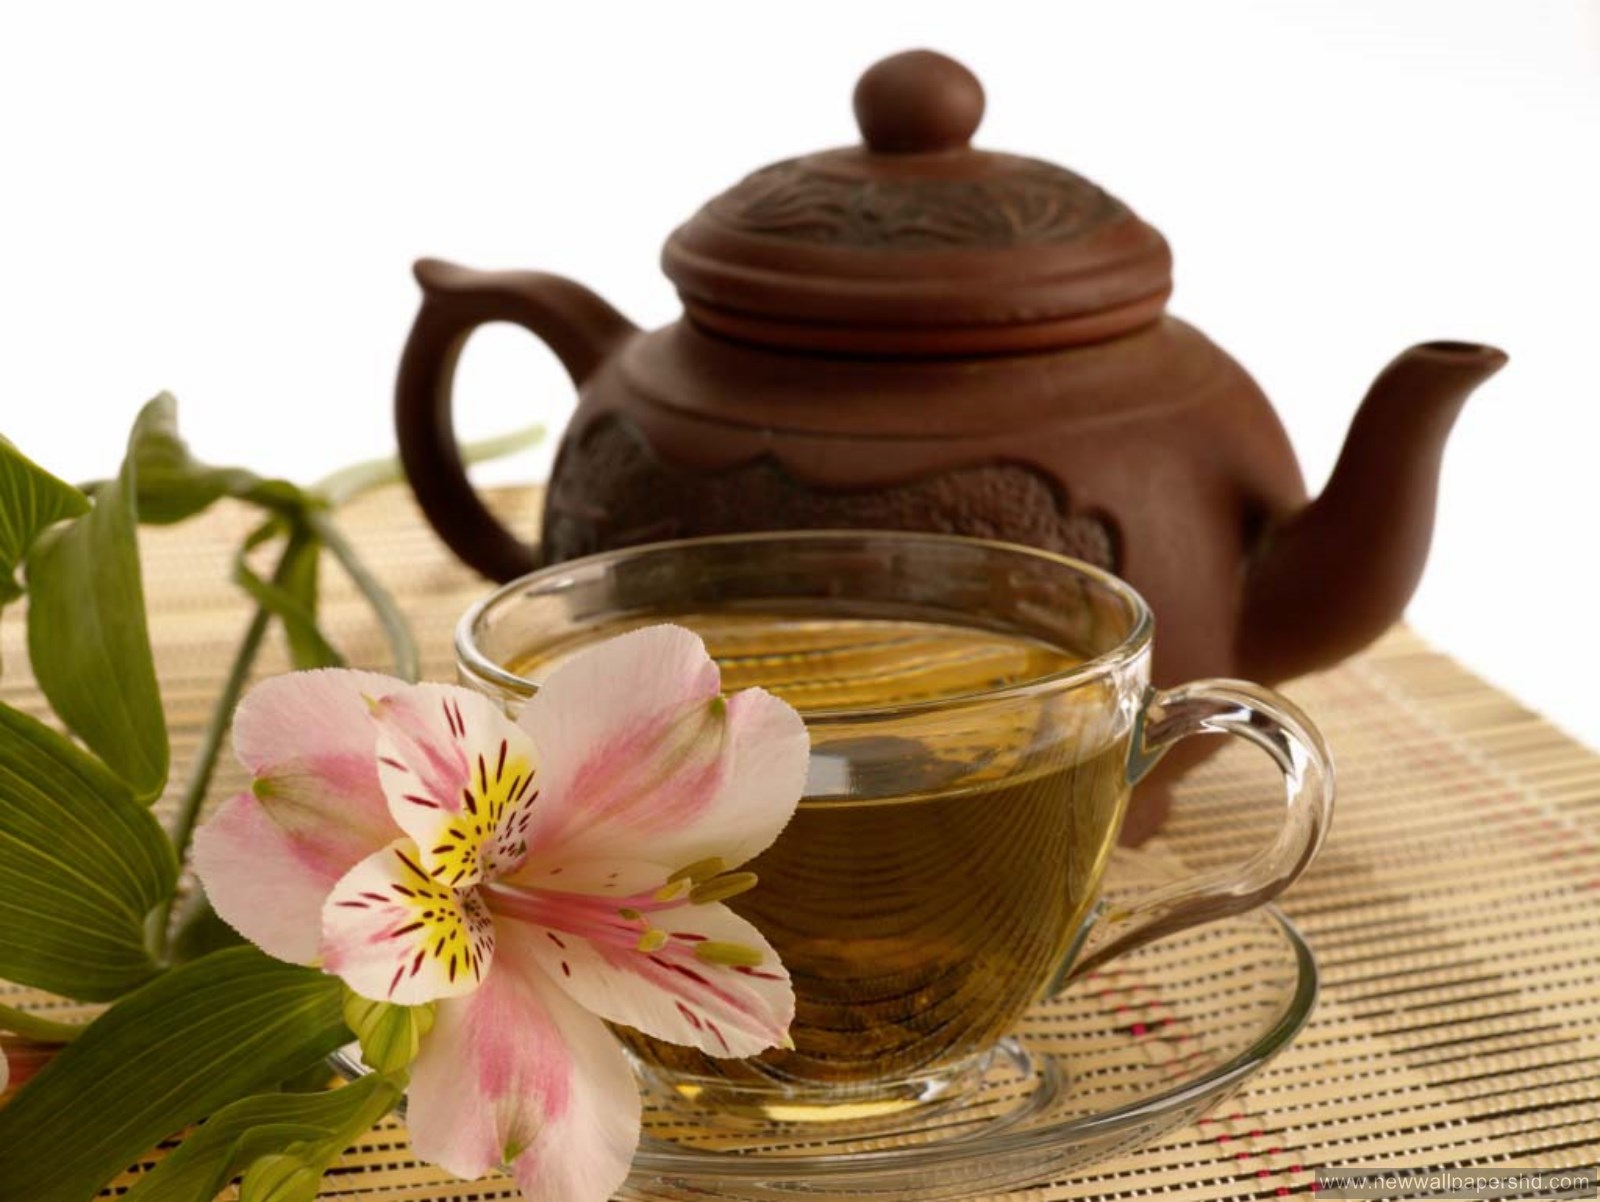 buongiorno carta da parati tazza di tè,teiera,tisana cinese,coperchio,tè,vasellame